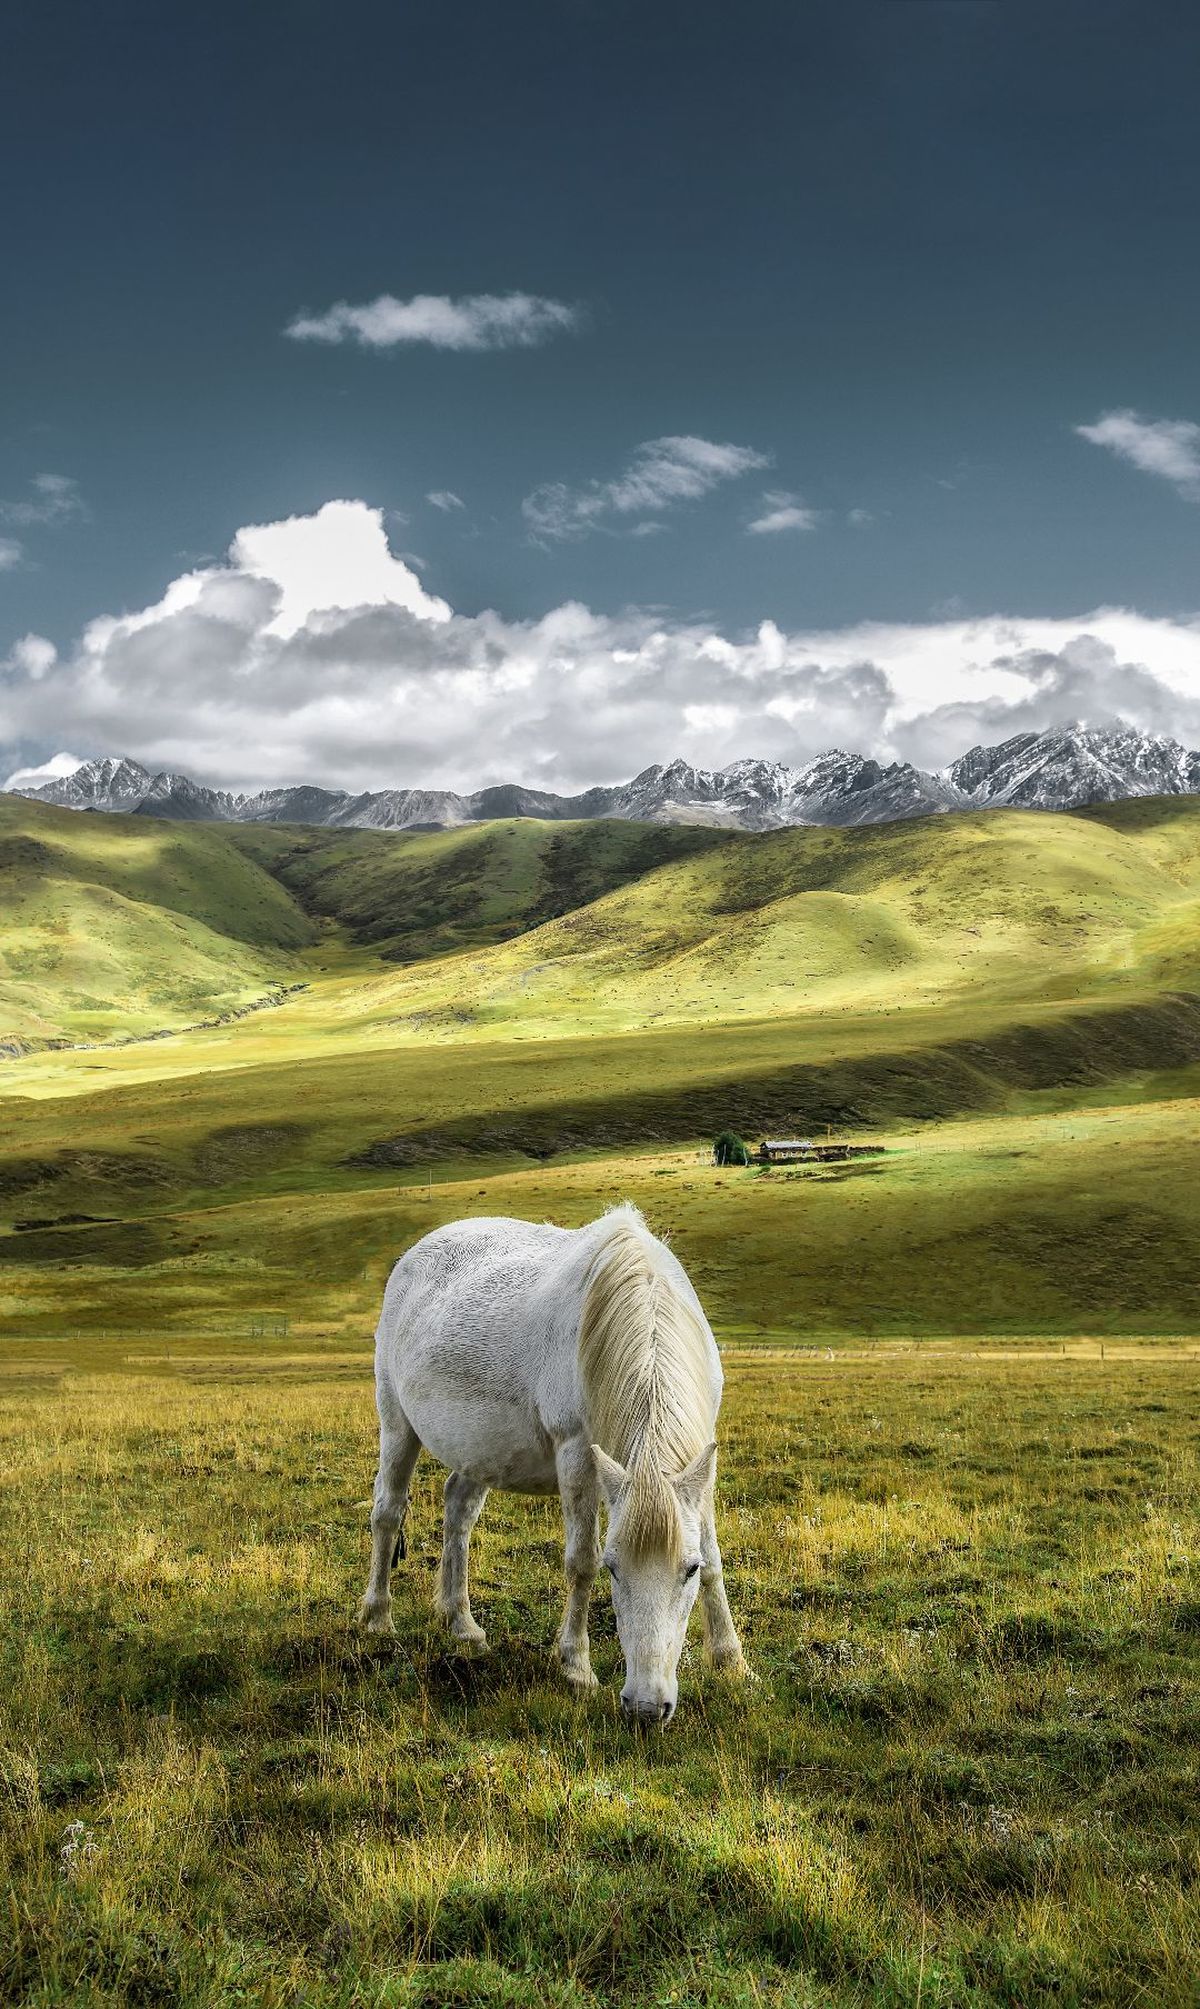 一匹白马在草地上吃草 背景是山脉。